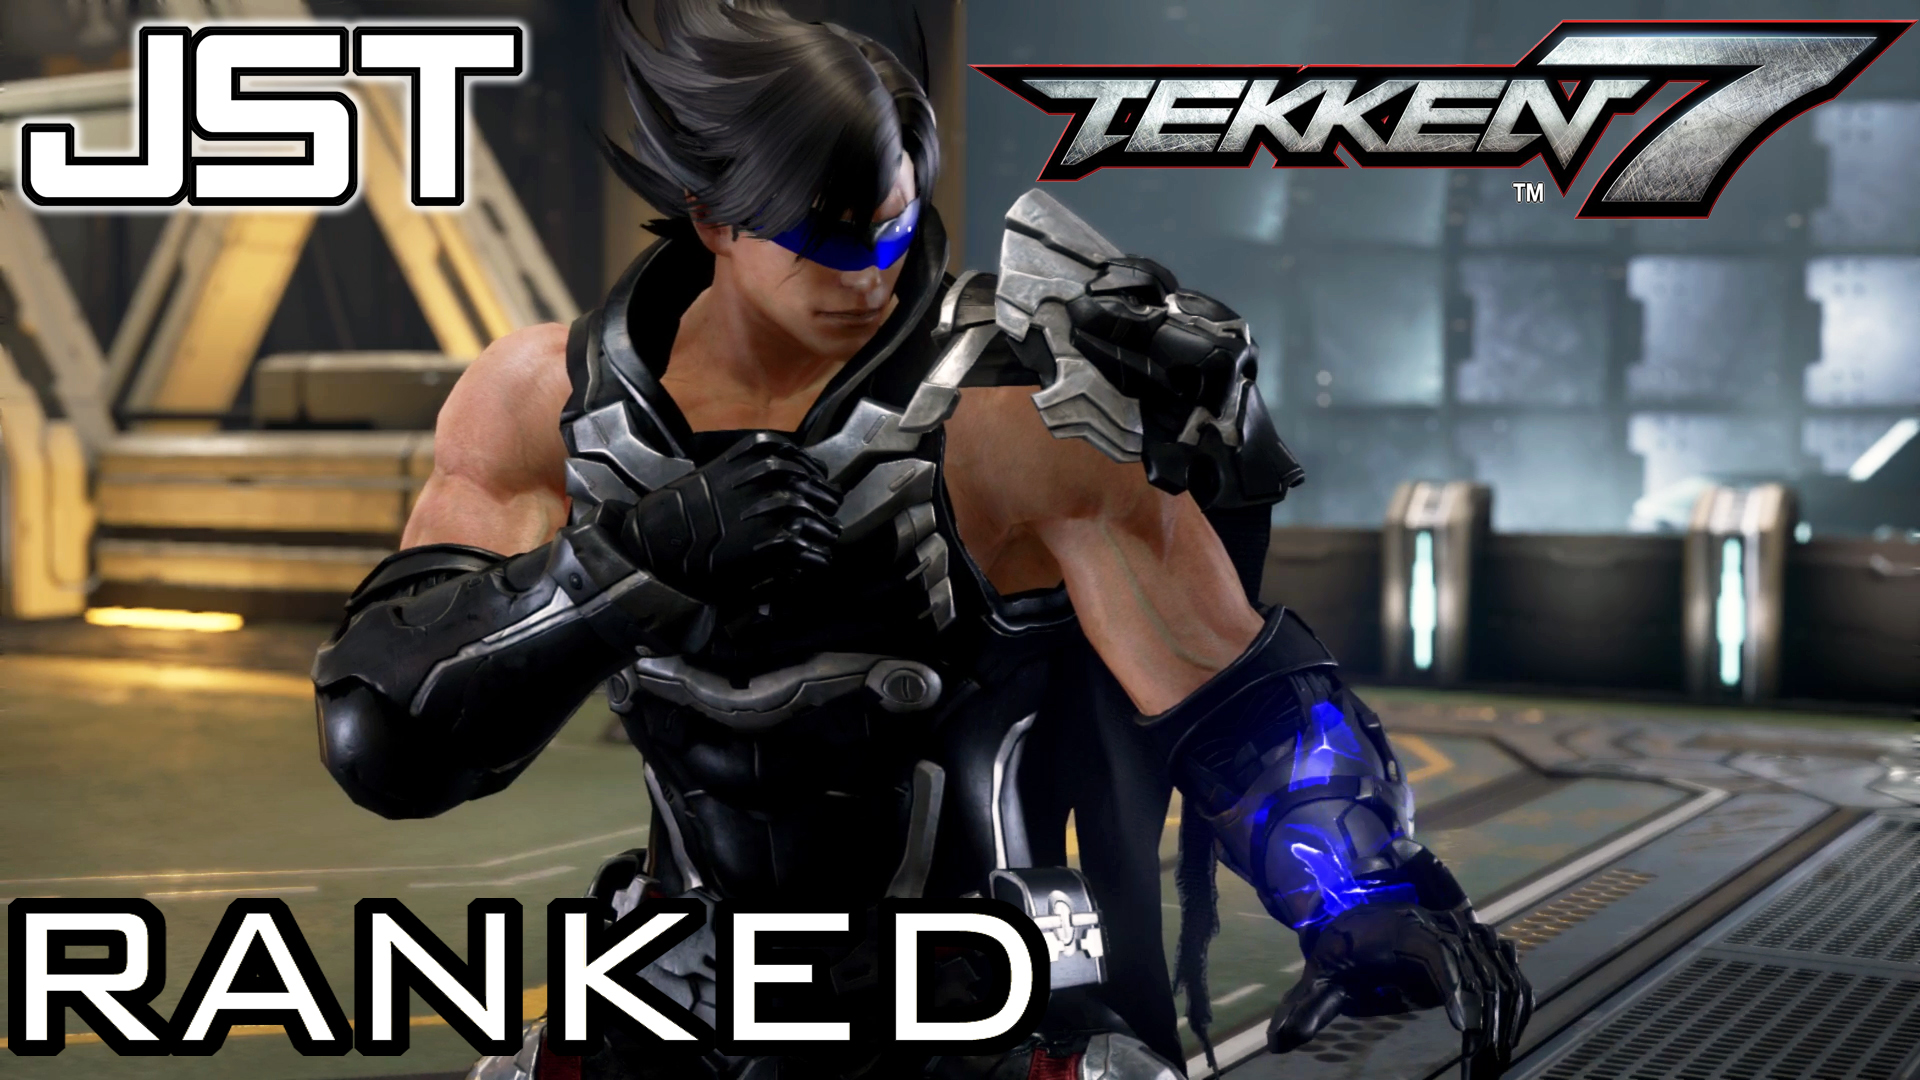 Tekken ranks. Теккен 7 на пс4. Tekken ps4. Ps4 Tekken 4. Теккен 7 VR ps4.